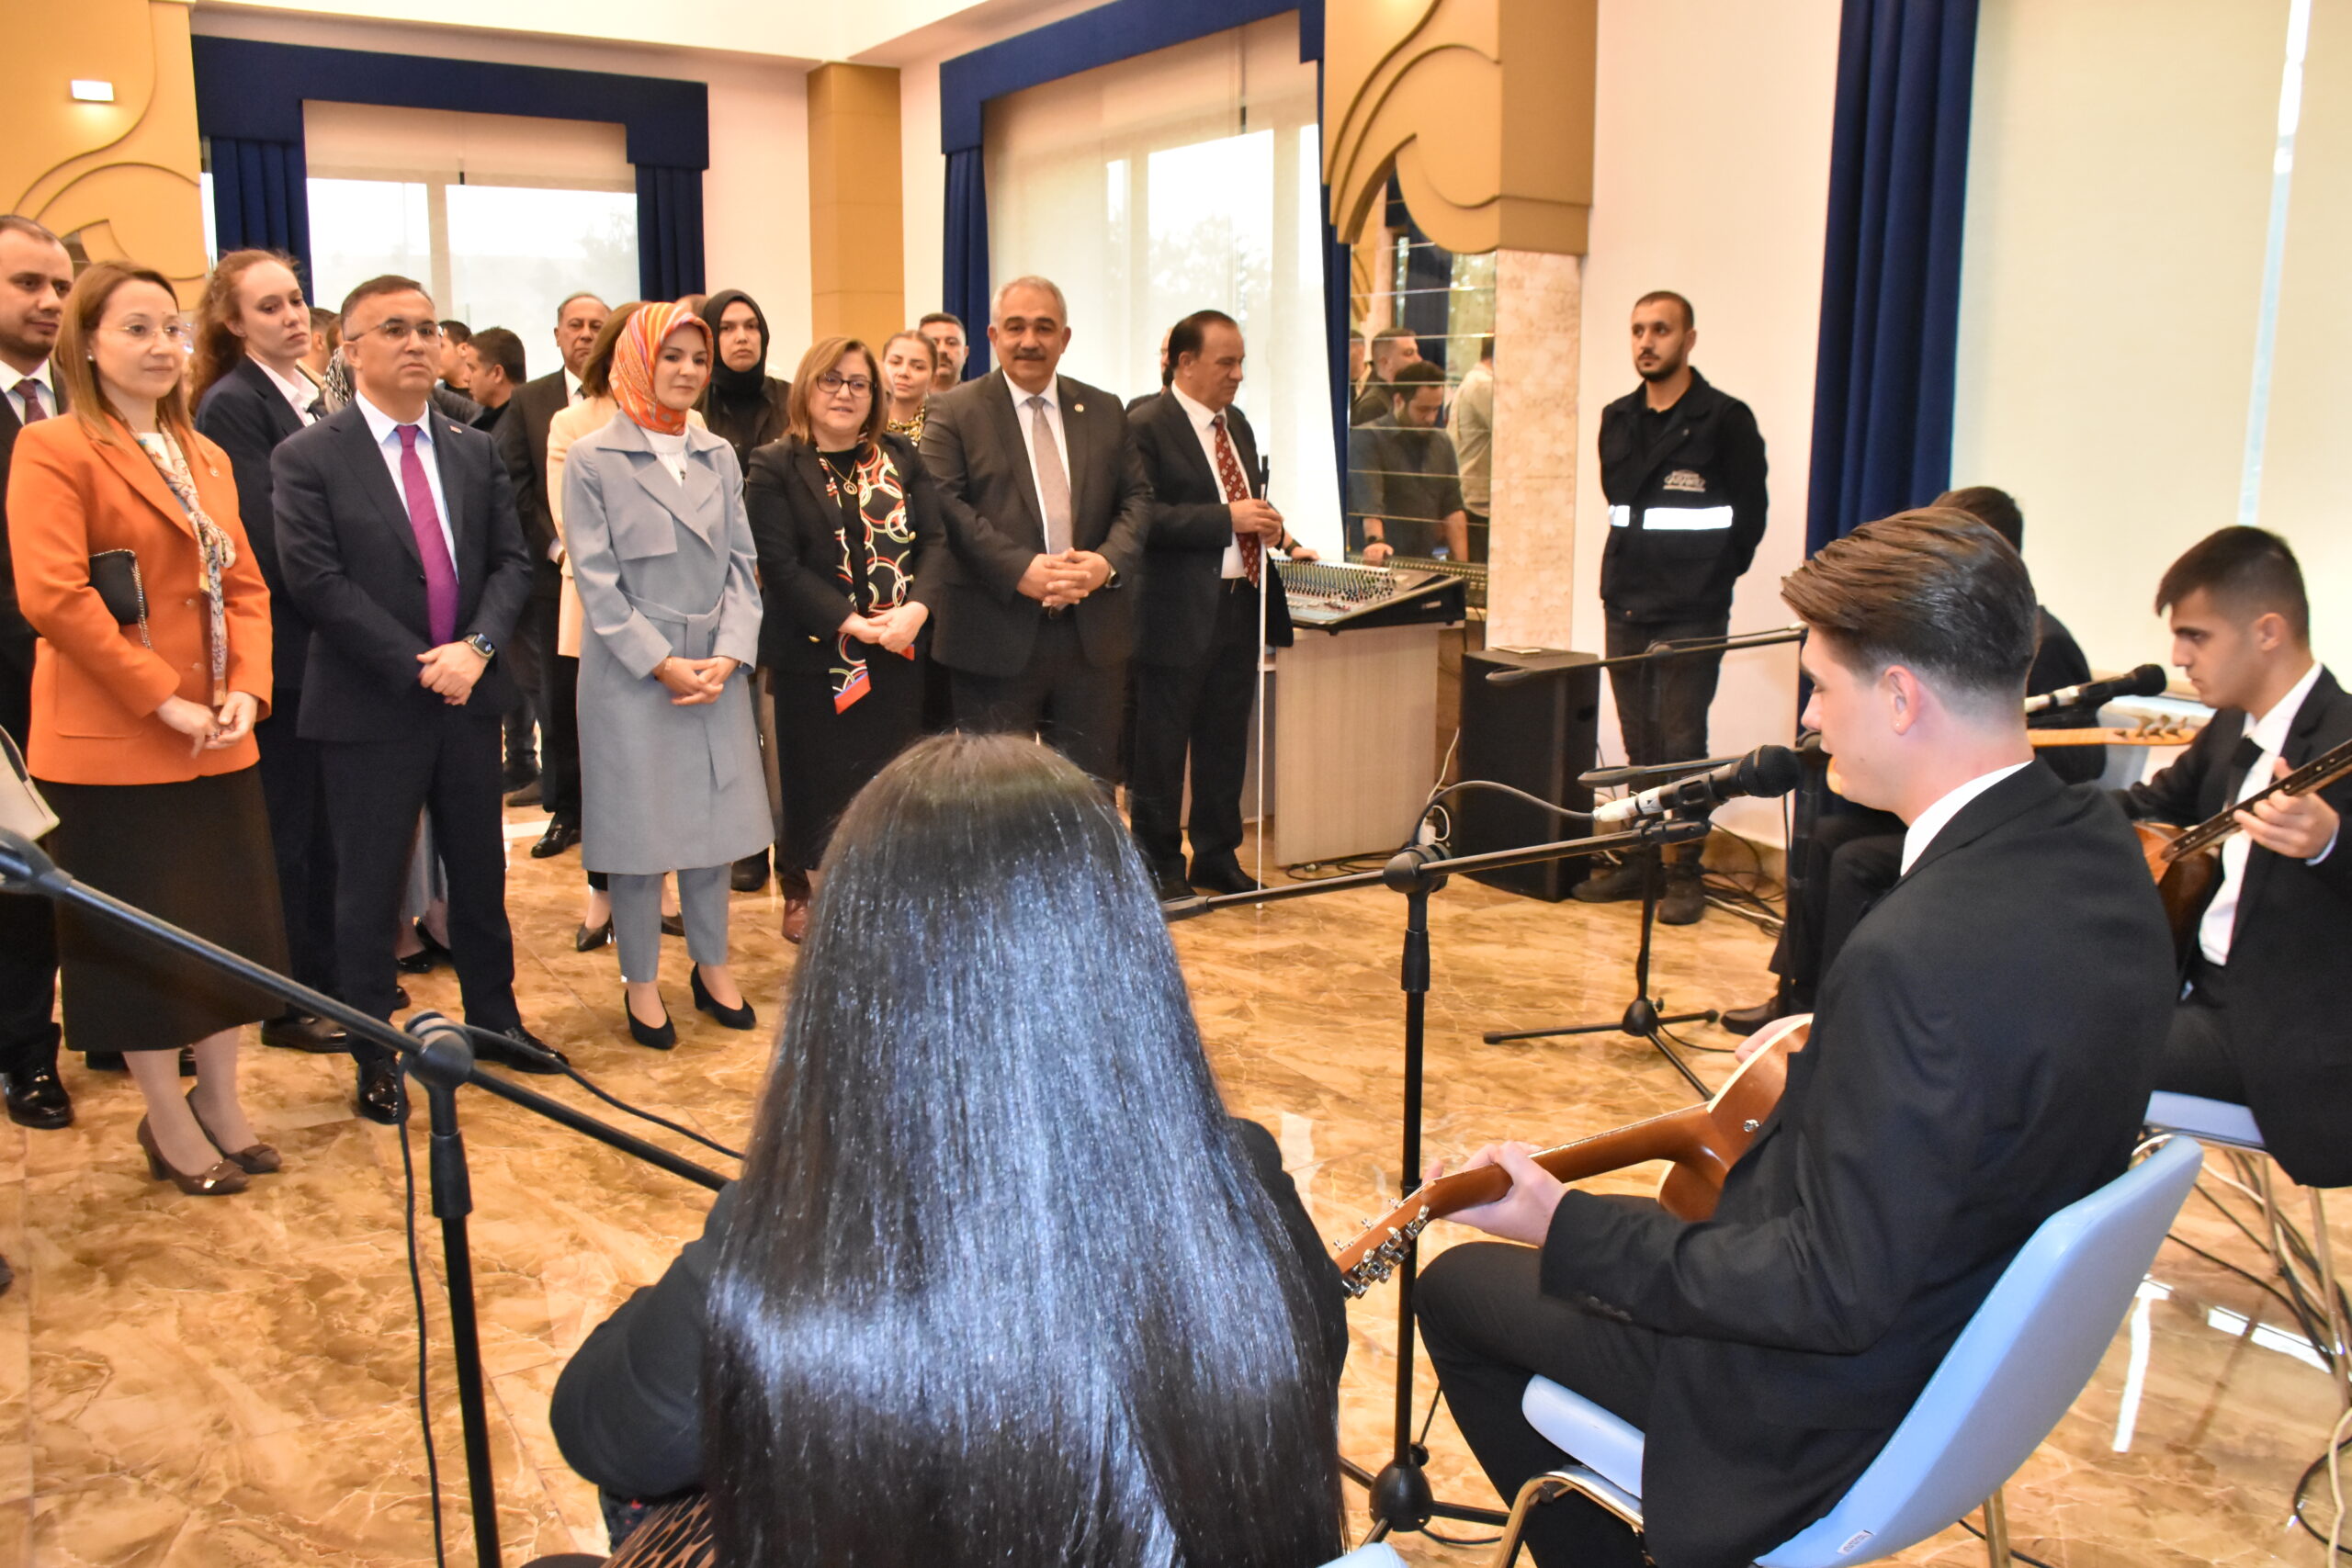 Aile ve Sosyal Hizmetler Bakanı Göktaş, Gaziantep’te ziyaretlerde bulundu